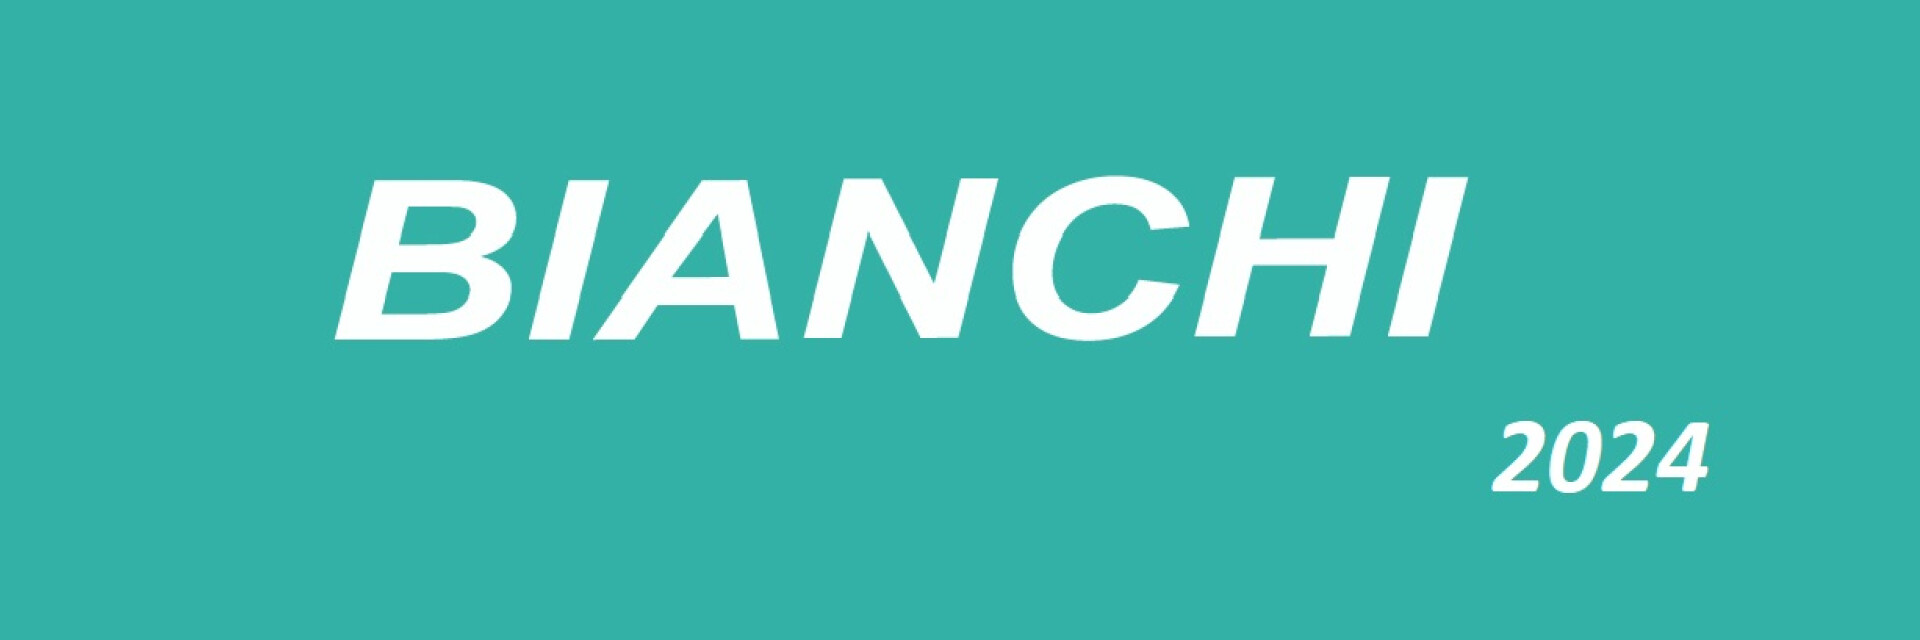 Bianchi Shop 2022